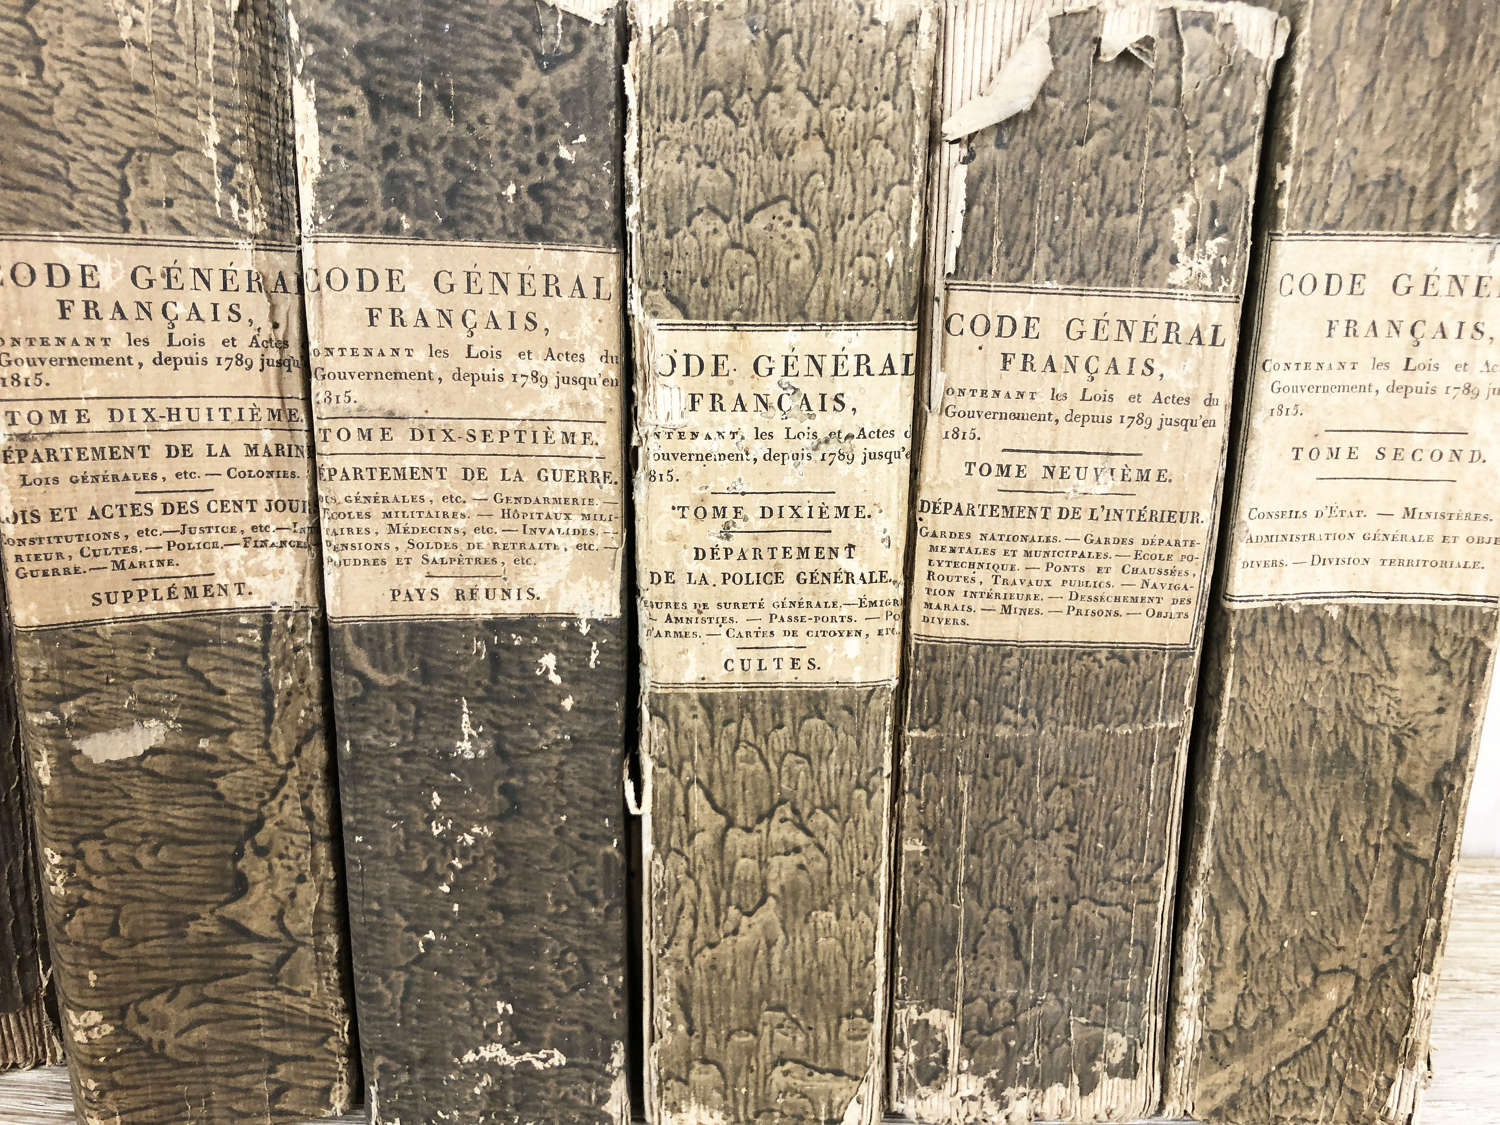 8 Volumes of 'Code General Francais - printed Paris 1821